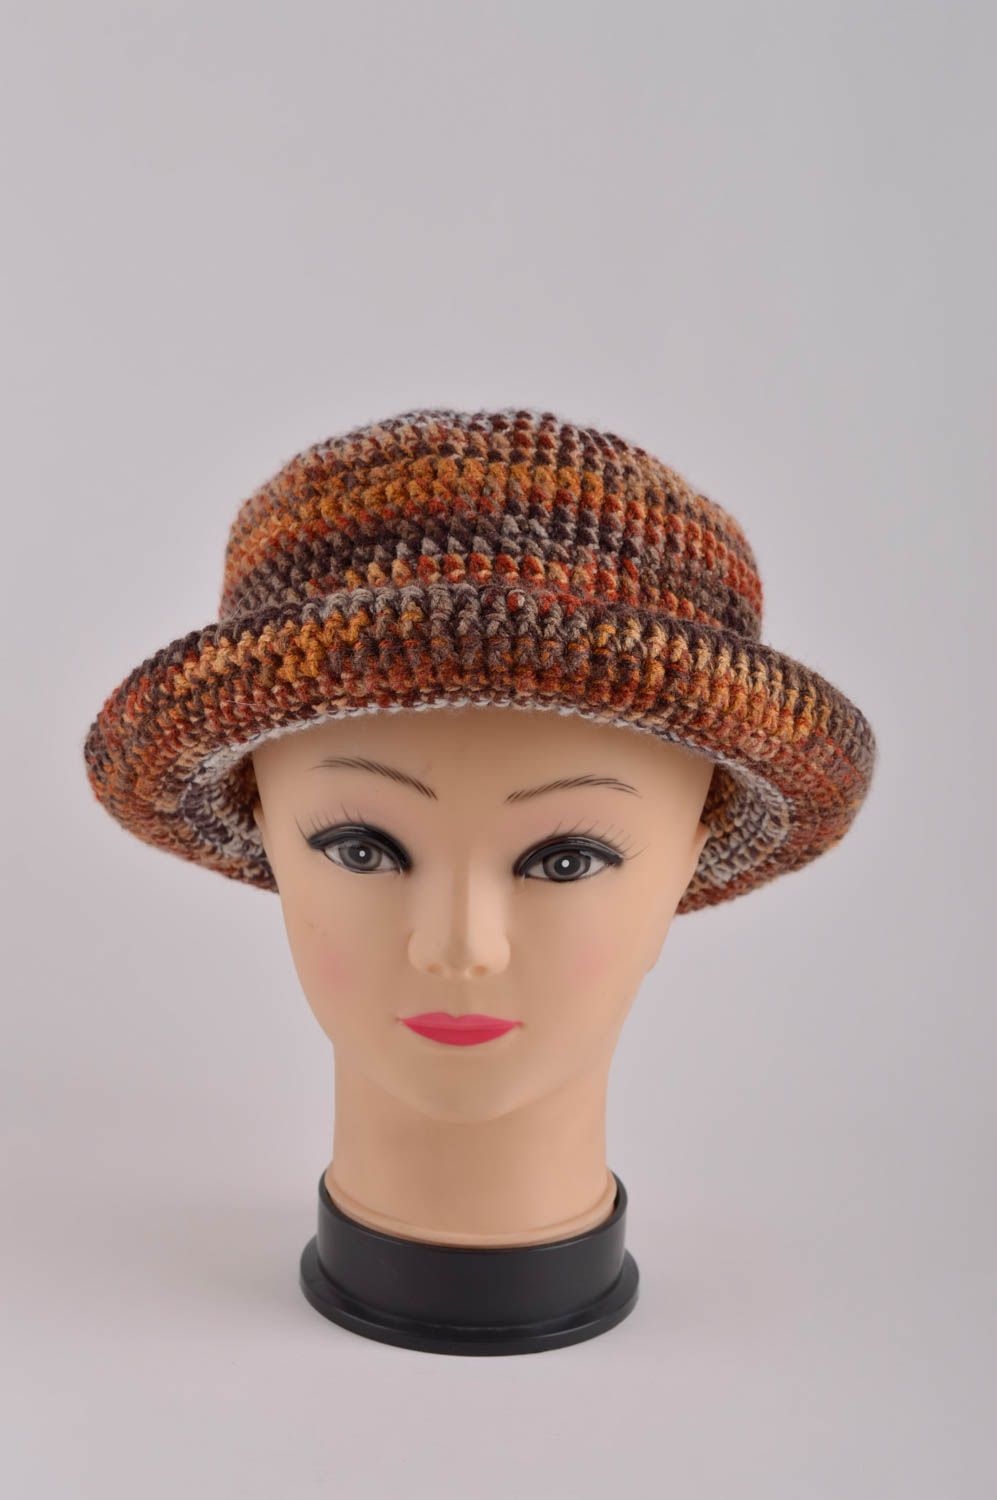 Handmade gehäkelter Hut Damen Accessoire ausgefallener Hut für Winter stilvoll foto 3